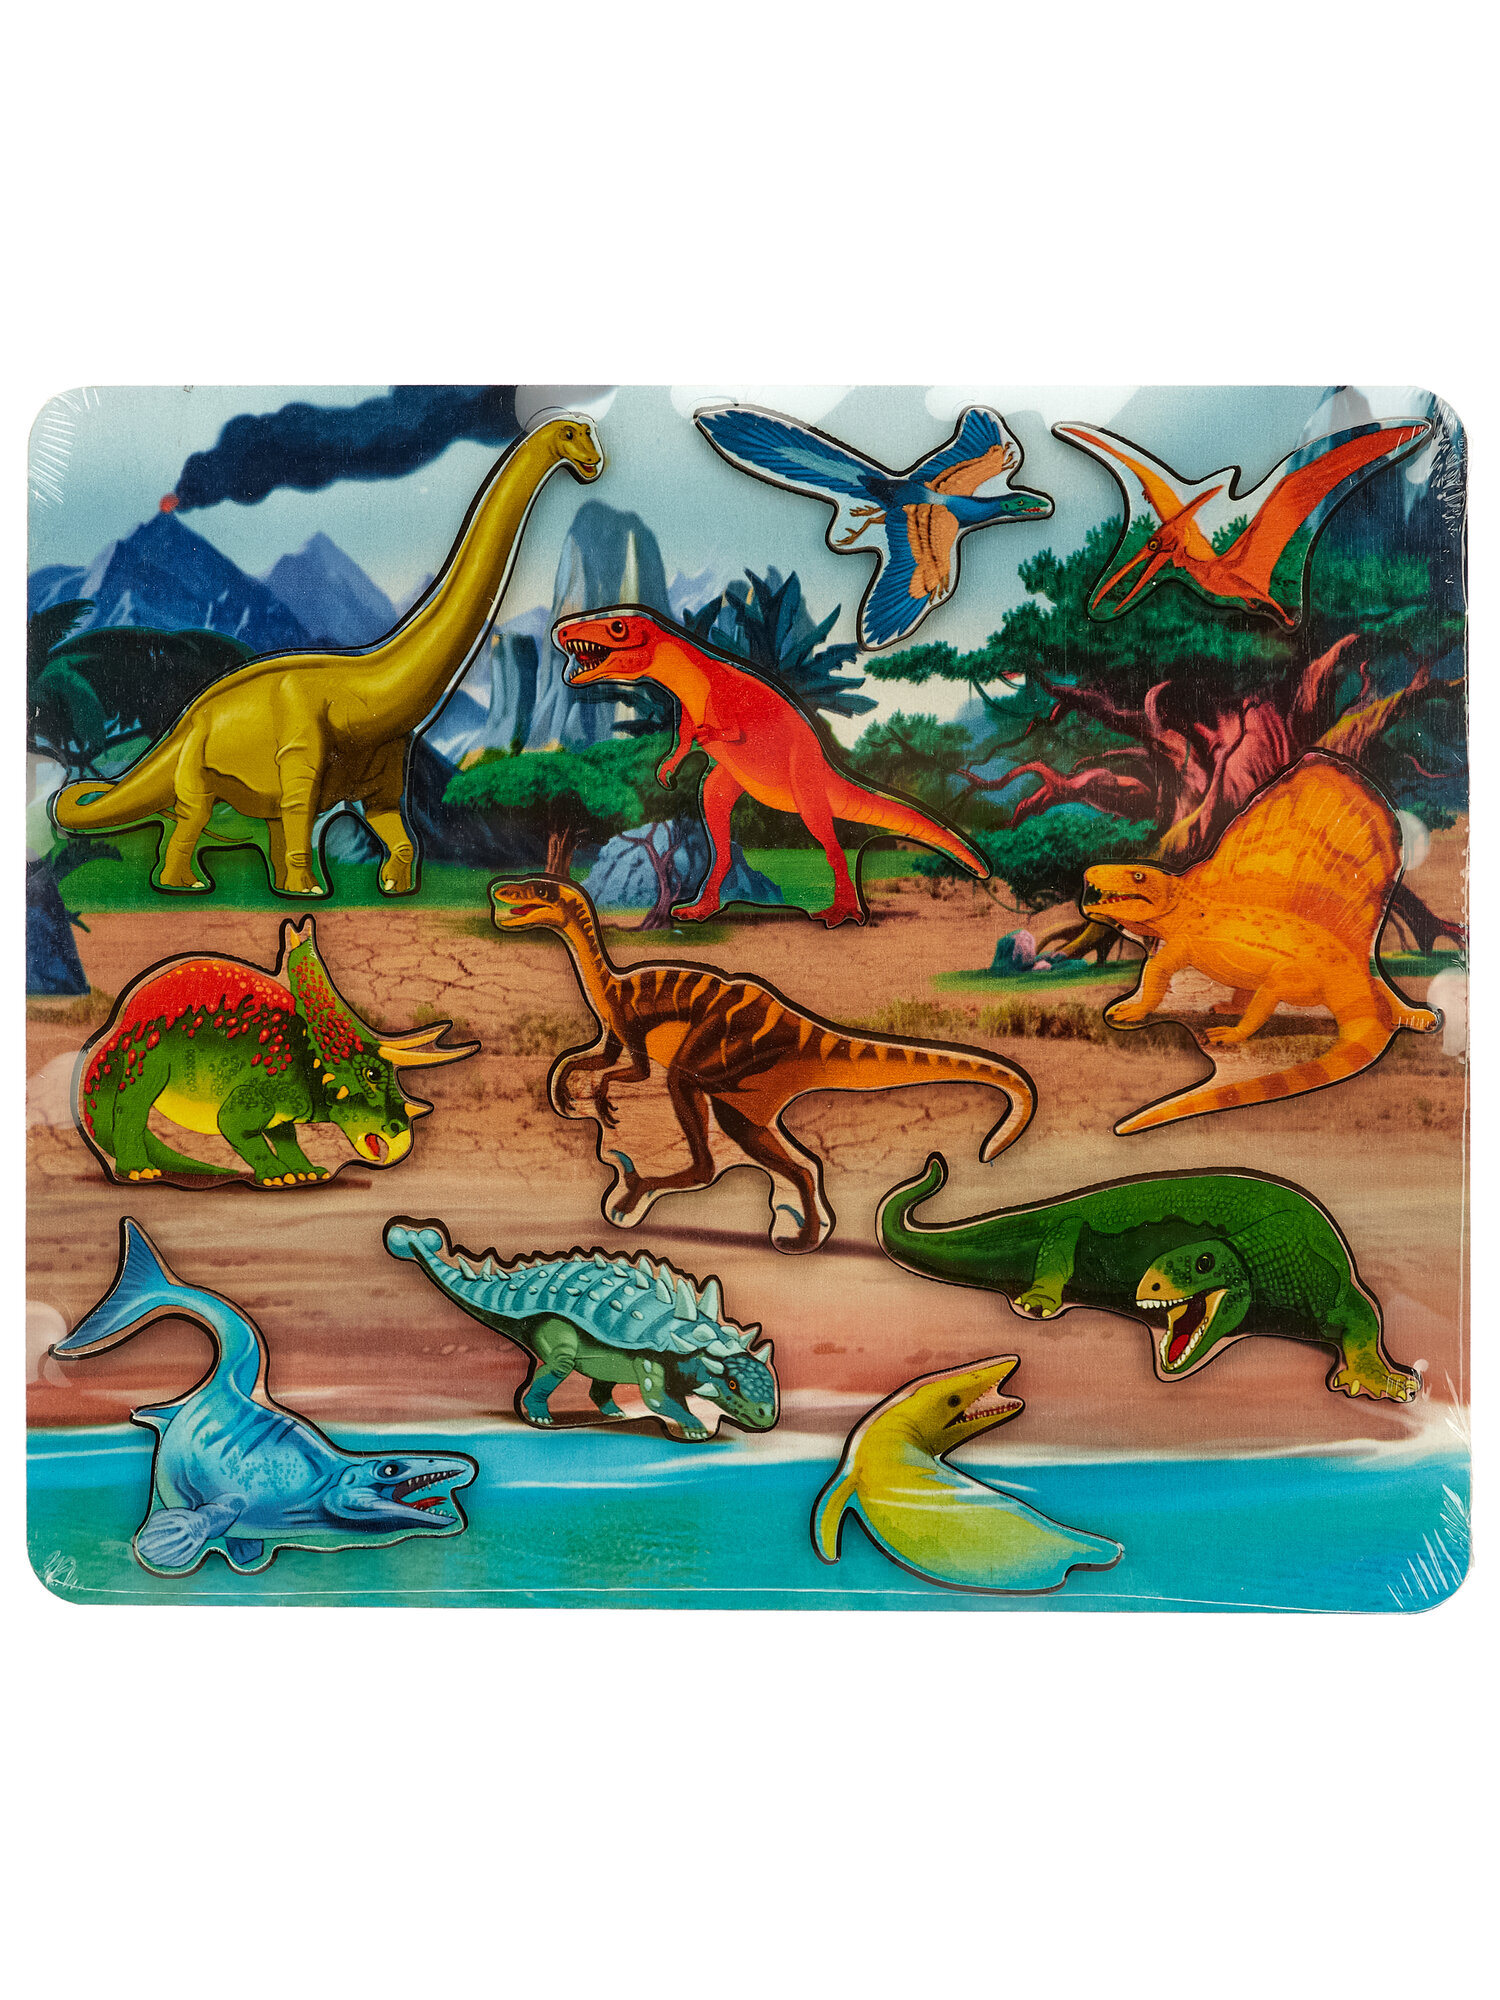 Нескучные игры Рамка-вкладыш «Мир динозавров» 11 деталей